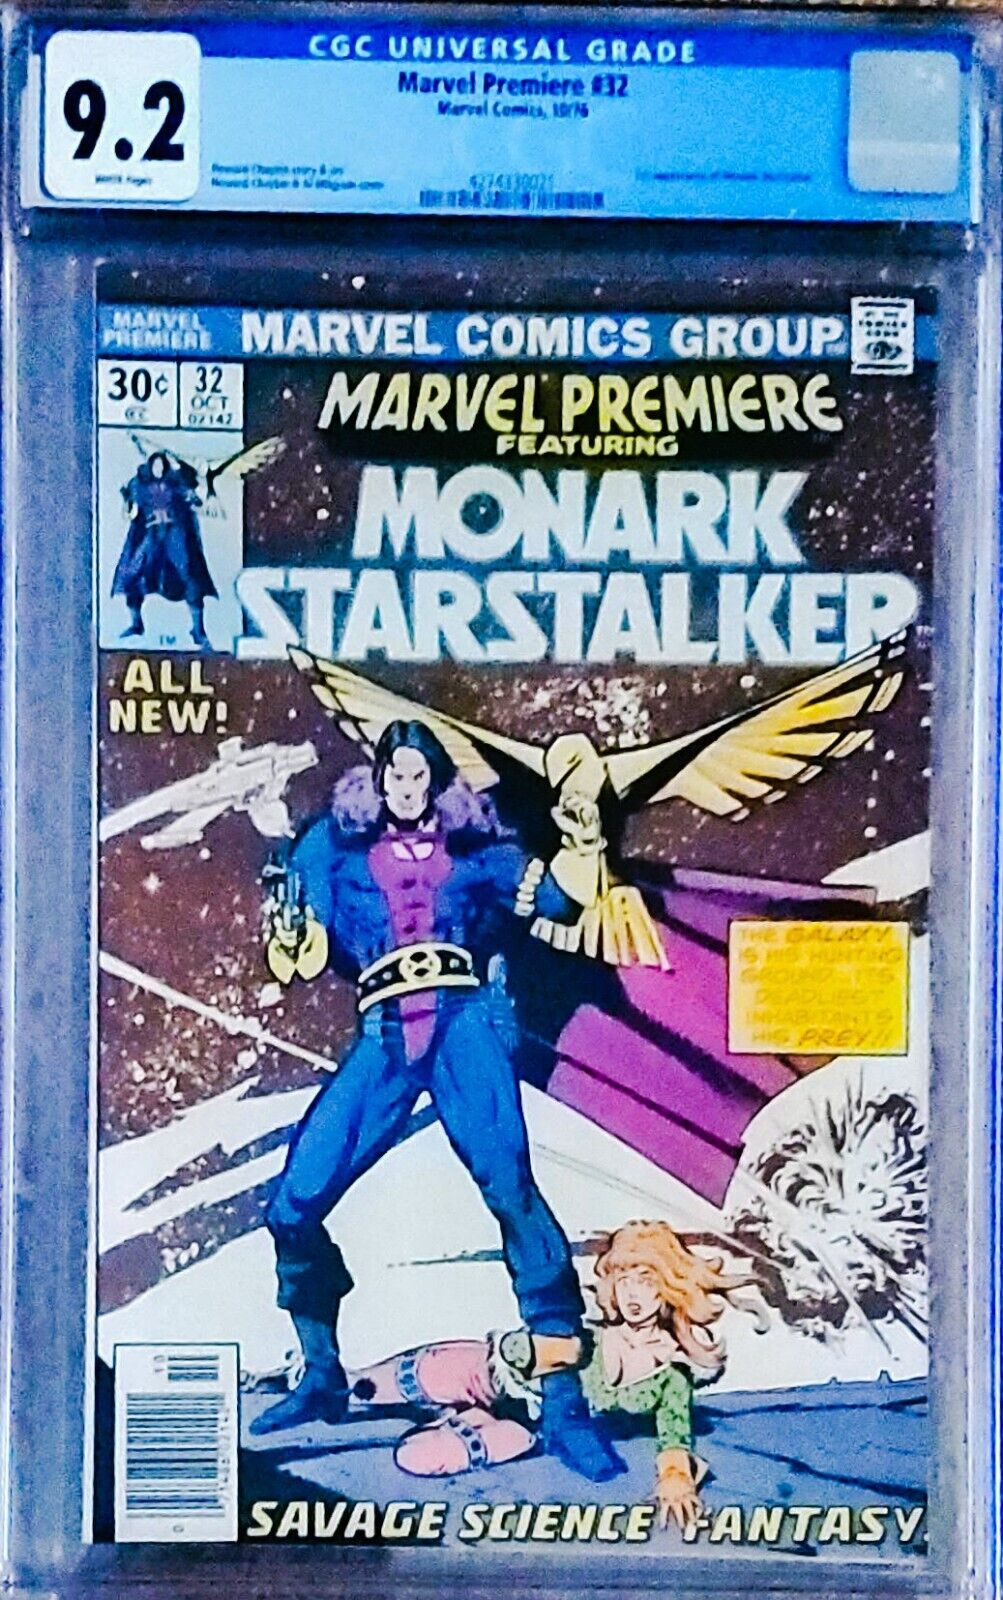 Marvel Comics: Premiere #32, Monark Starstalker (1976) CGC 9.2, 1st Appearance